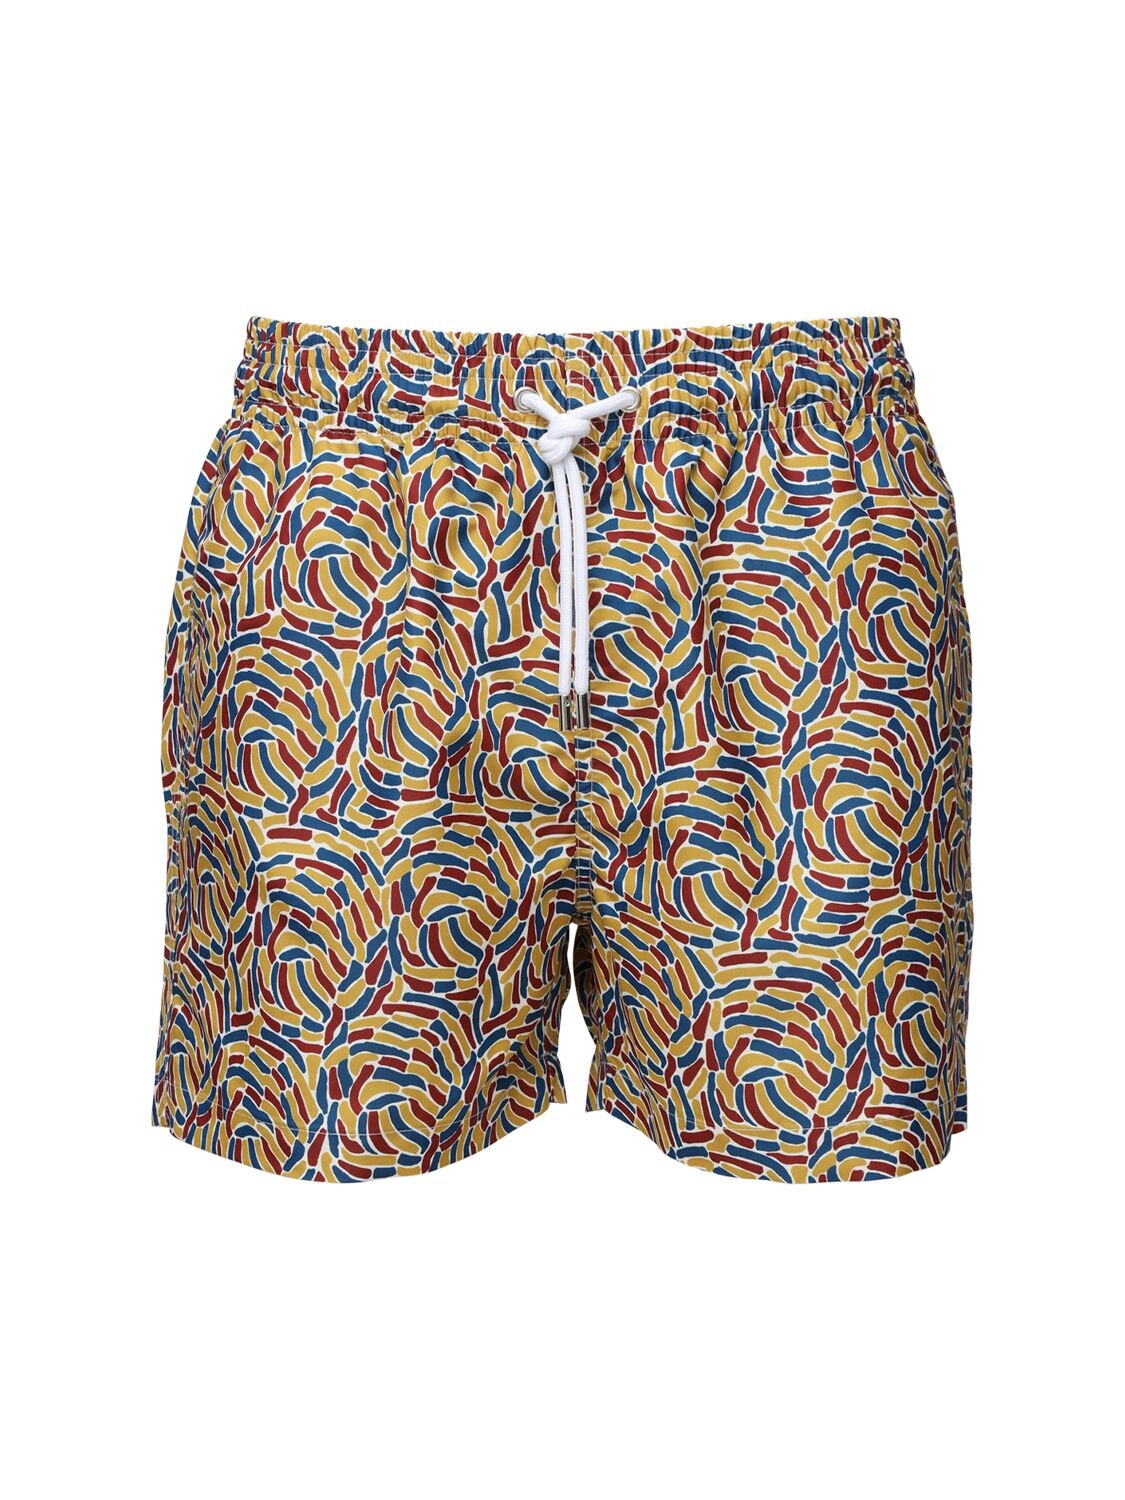 Apnee Printed Regenerated Nylon Swim Shorts In Multicolor